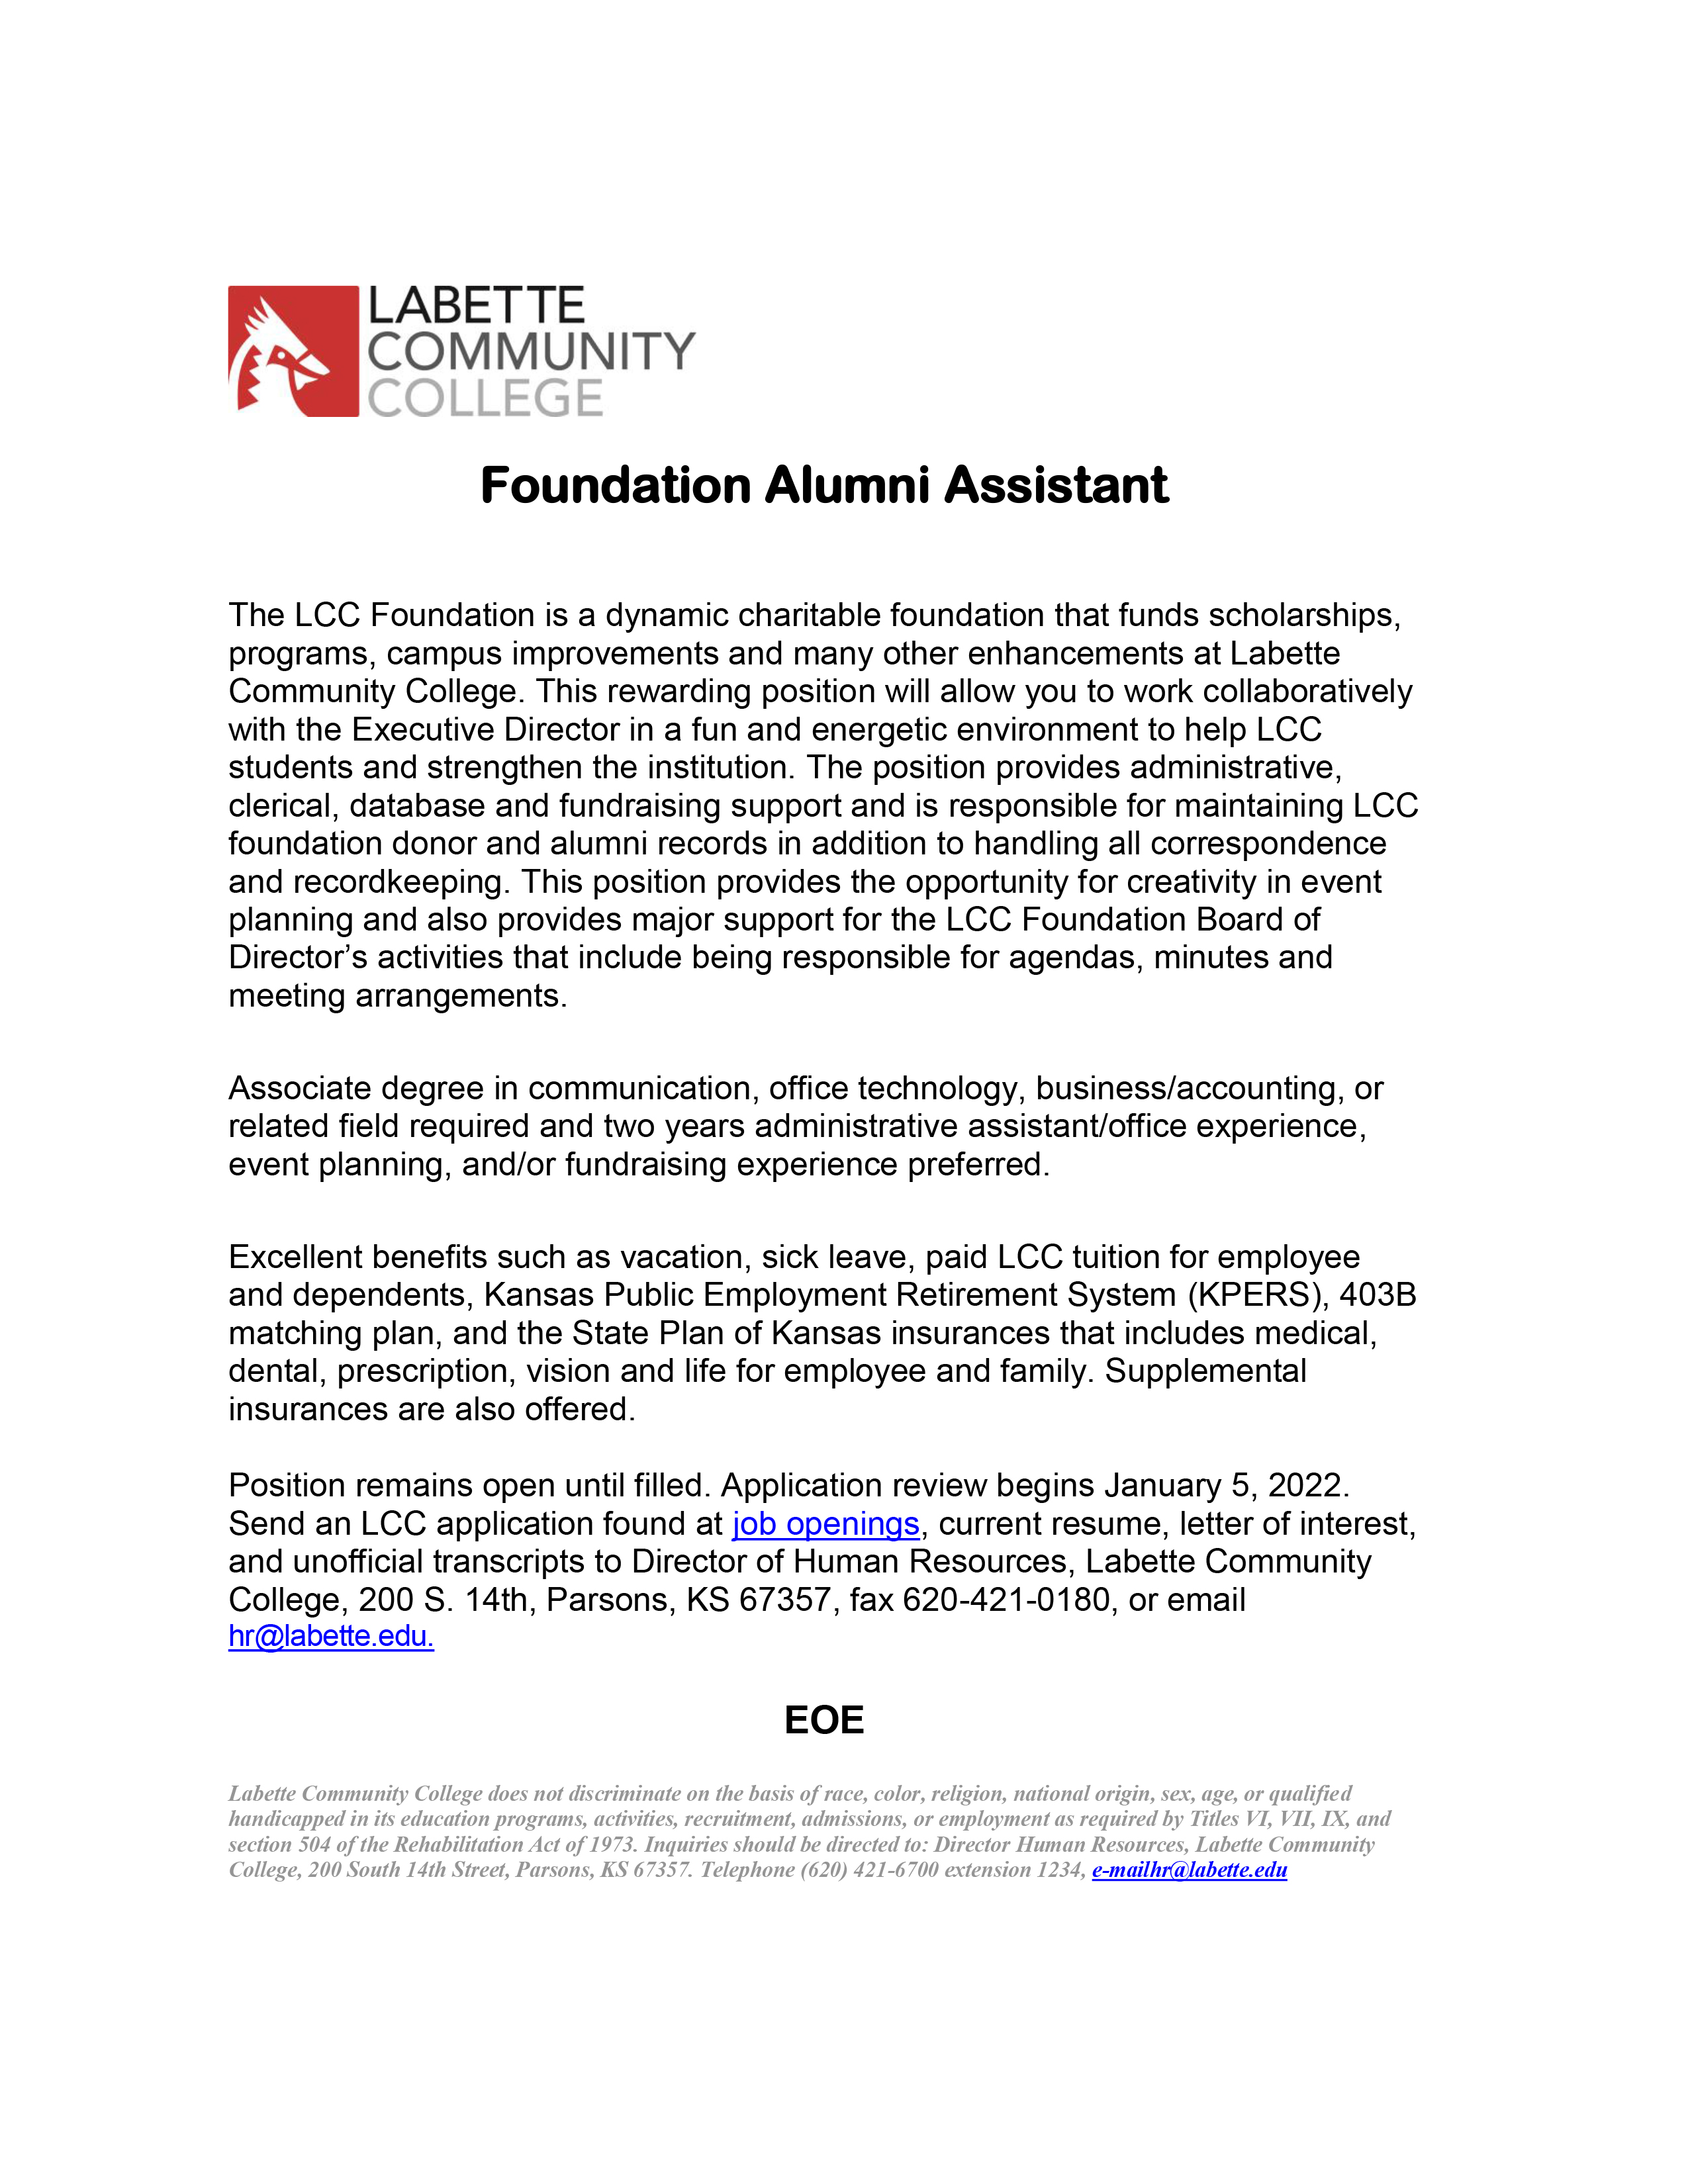 Labette Community College Foundation & Alumni